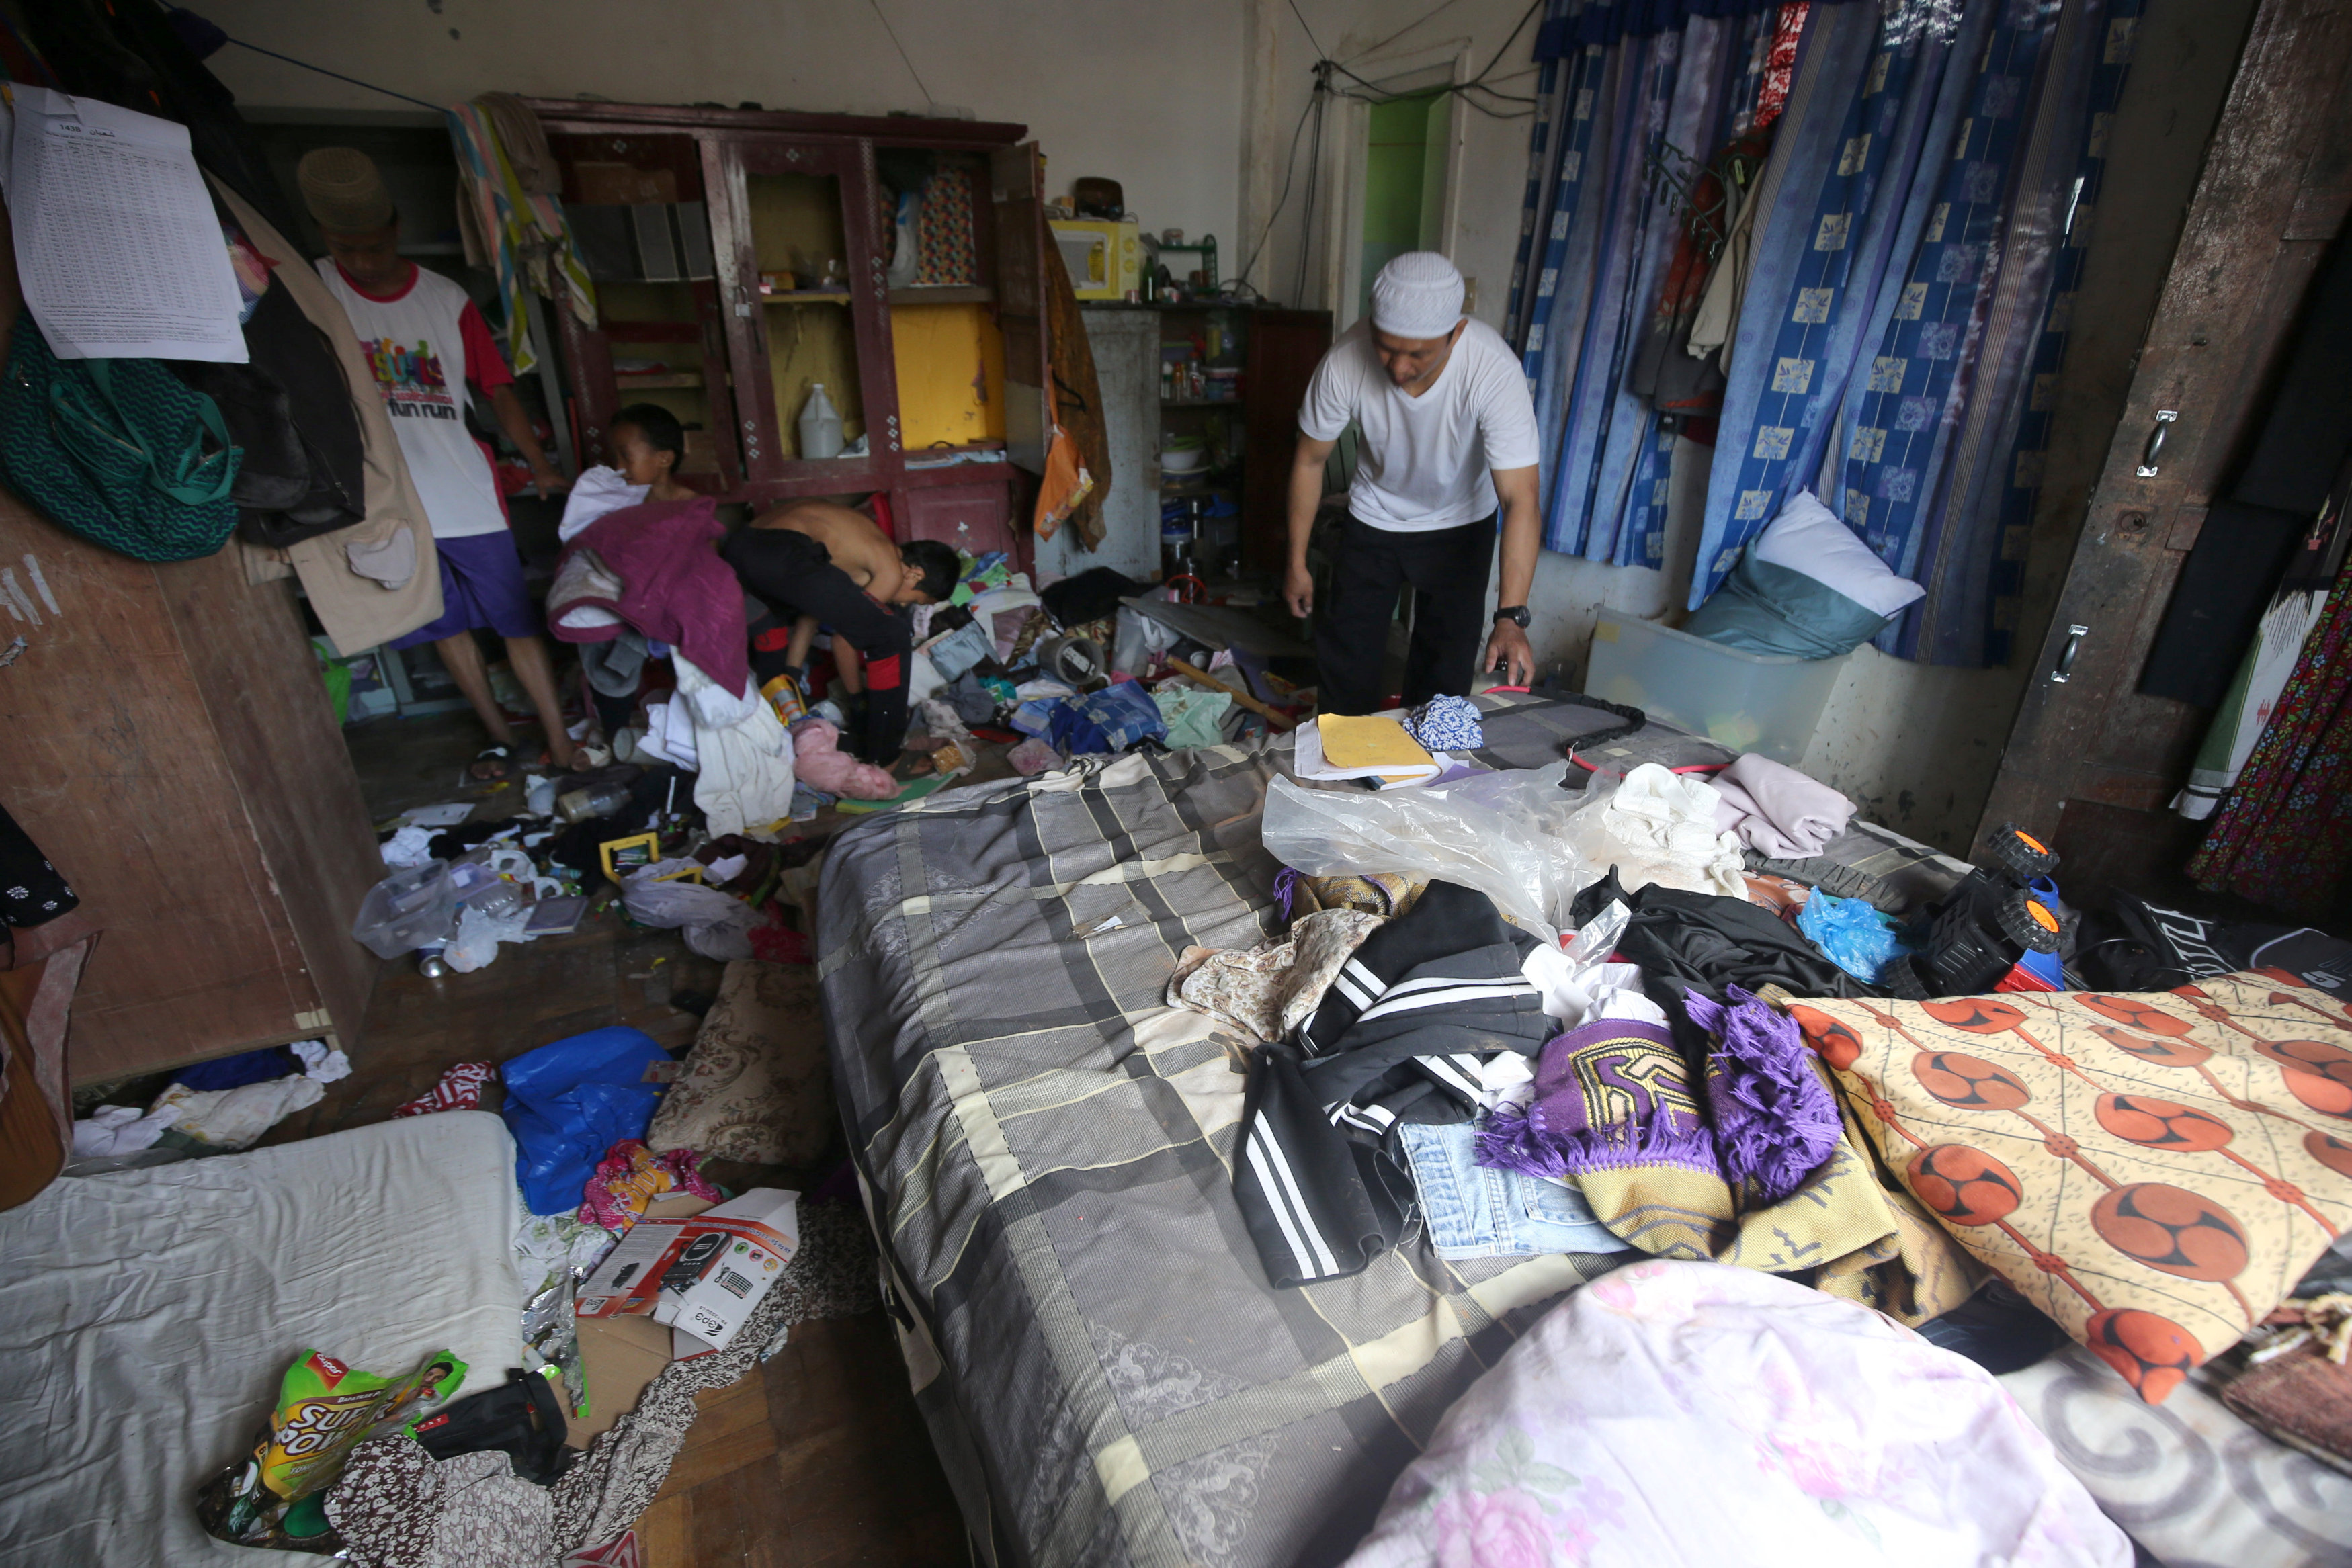 أثار فوضوية فى المنازل الفلبينية بمدينة مراوى